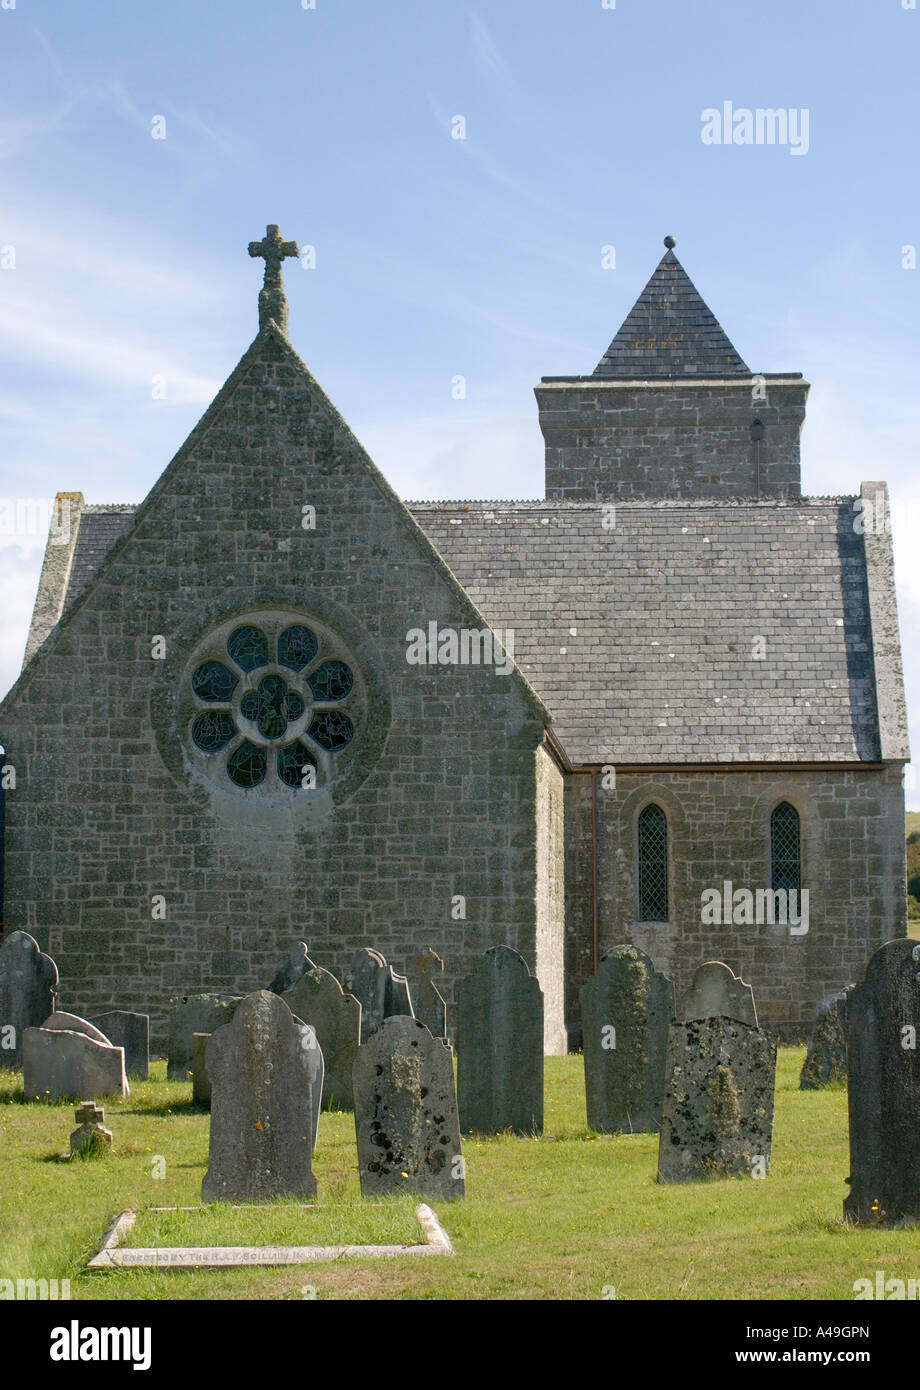 L'église de St Nicholas Tresco Îles Scilly, Angleterre Royaume-uni 17 Septembre 2006 Banque D'Images